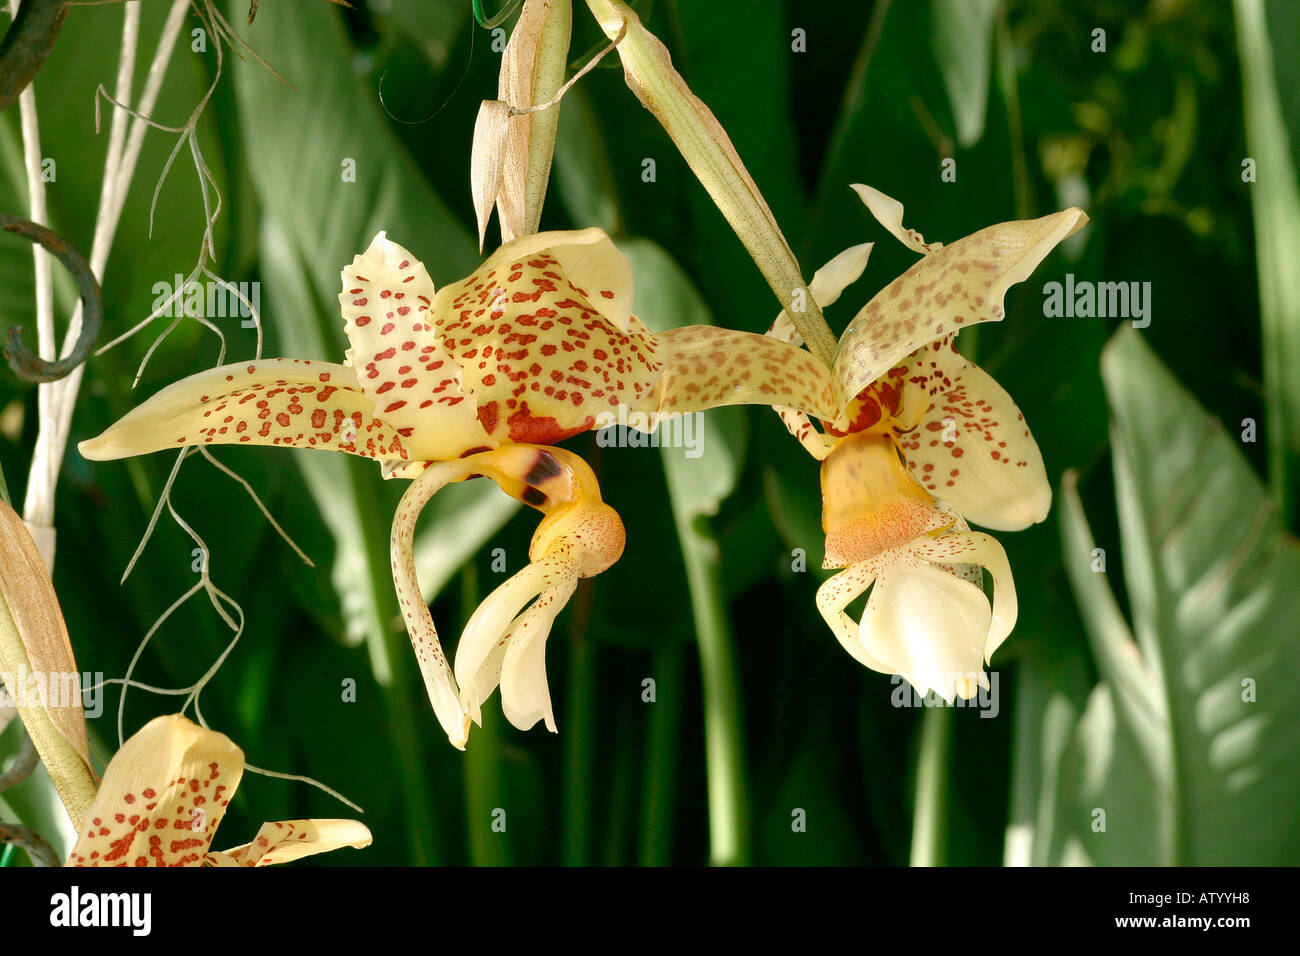 Stanhopea oculata Stock Photo